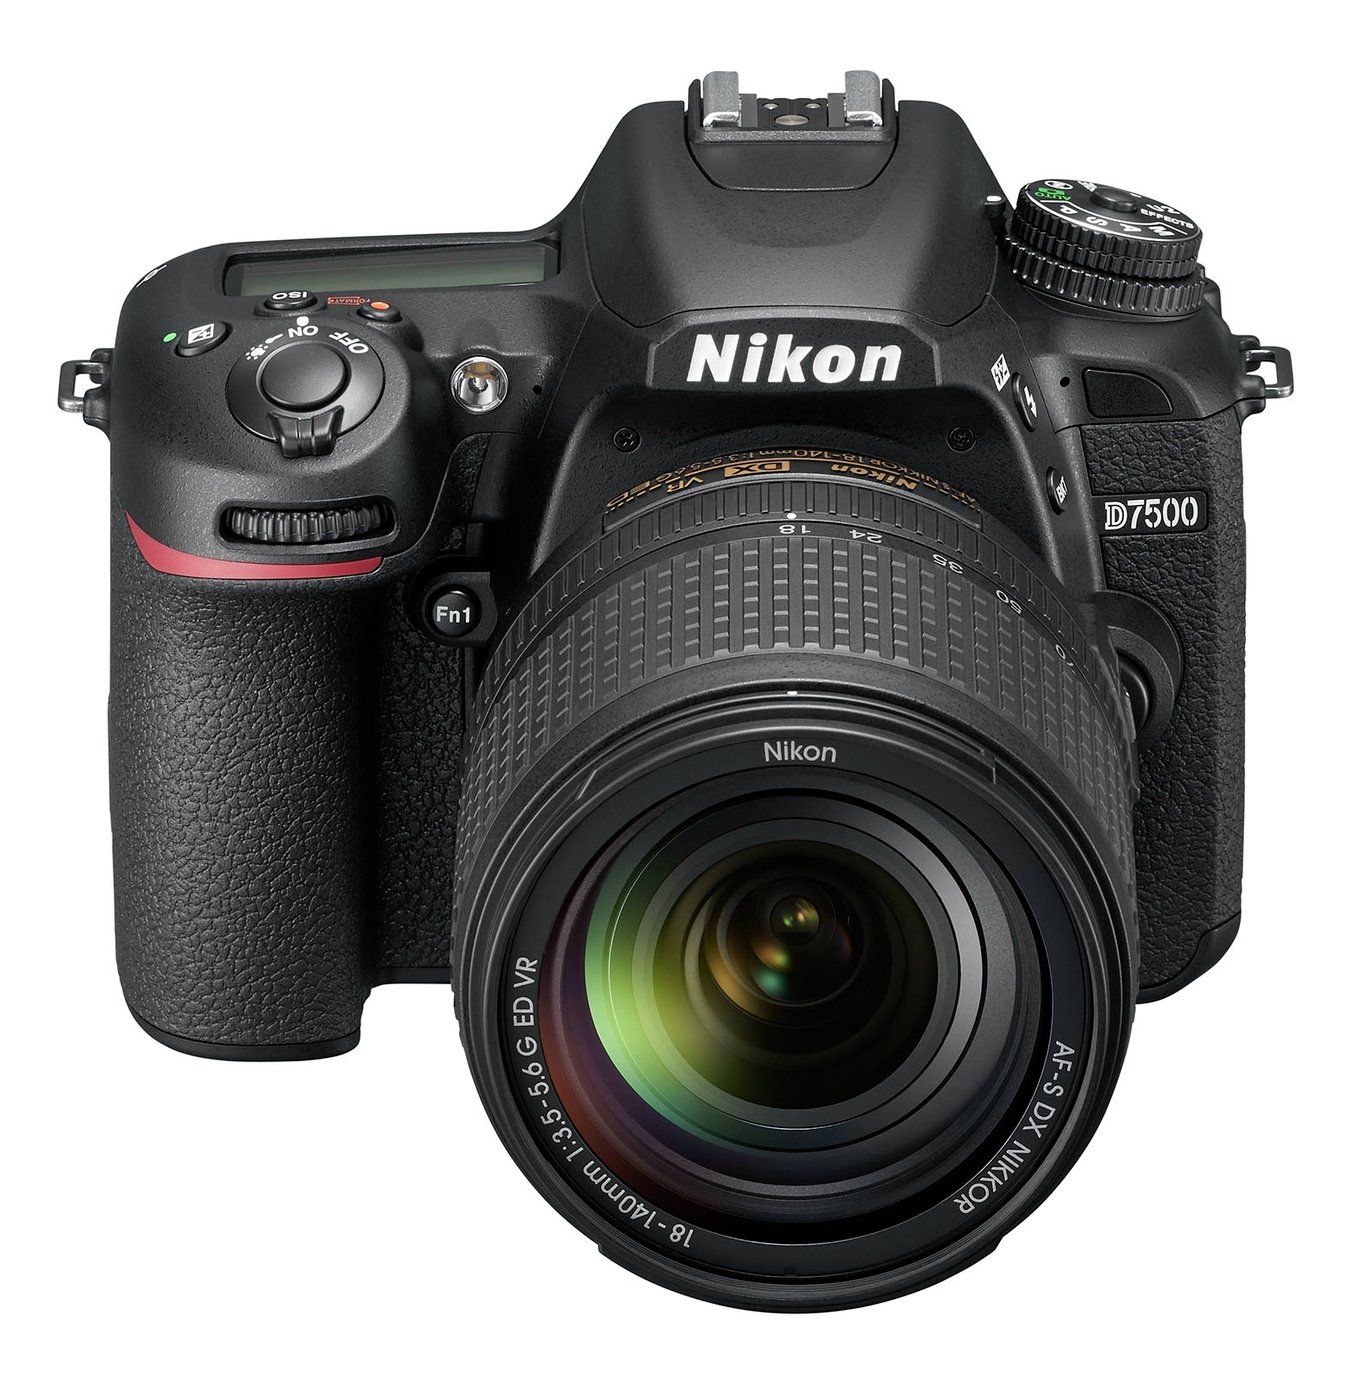 Nikon D7500 DSLR Camera with AF-S DX 18-140mm VR Lens